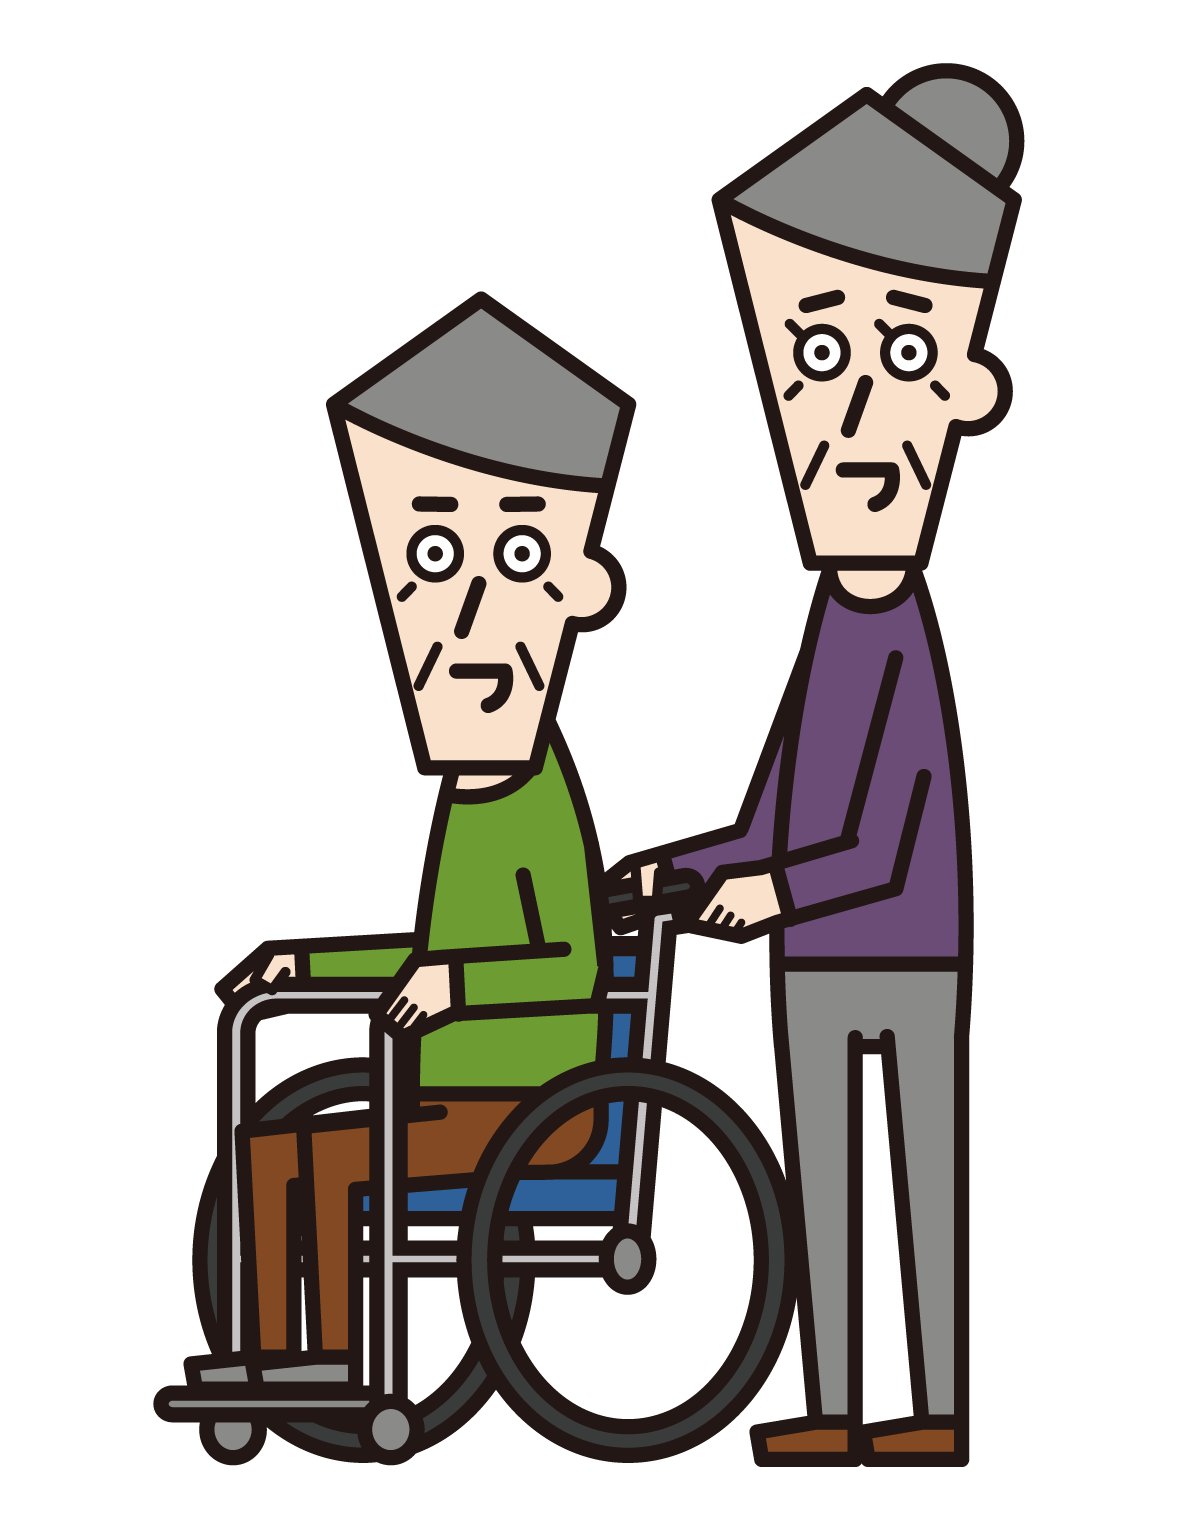 휠체어를 탄 사람(할아버지)과 푸셔(할머니)의 그림